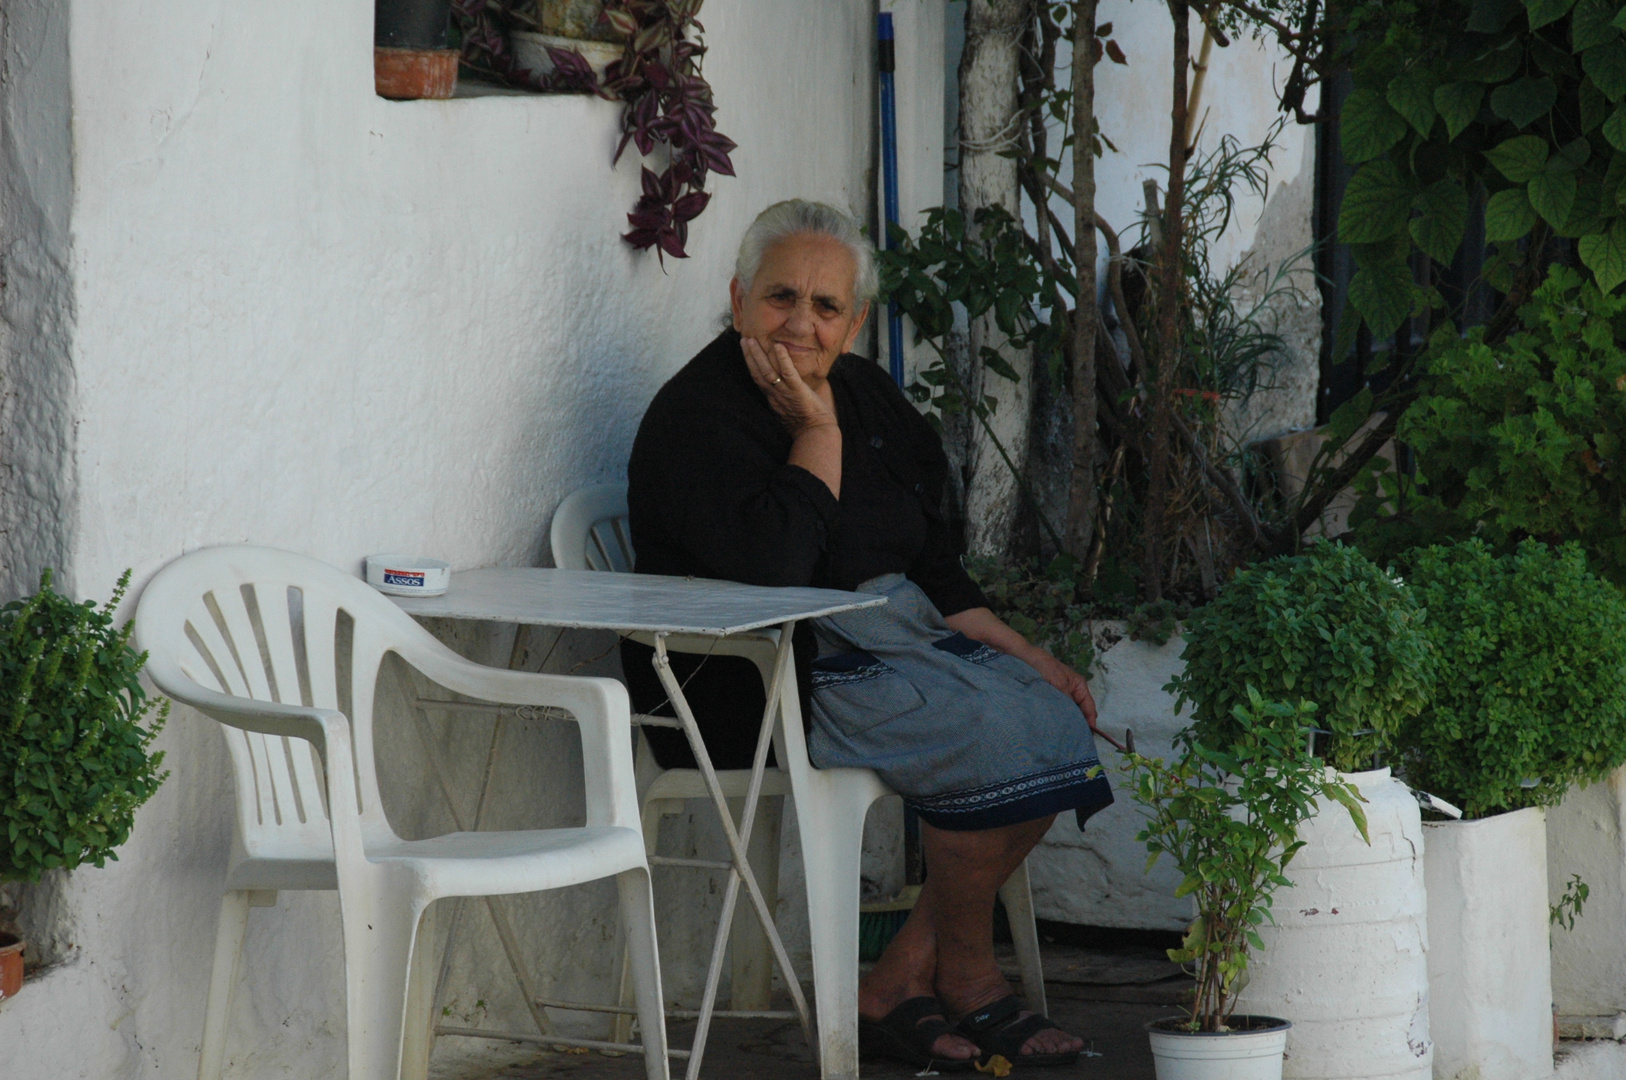 Kreta (2012), leerer Stuhl eines Rauchers